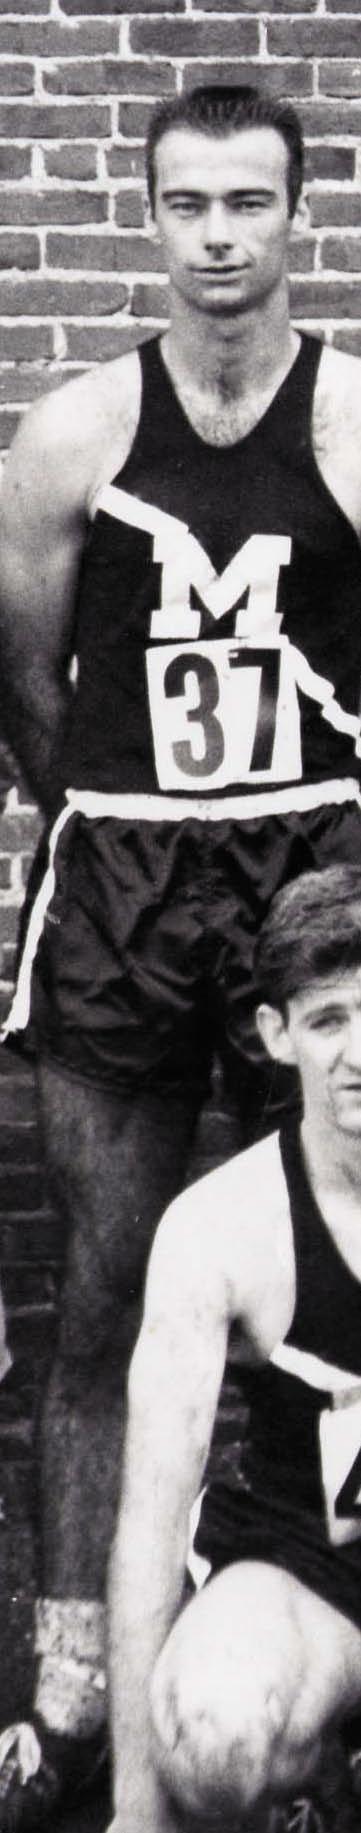 Coach Ken O Brien as an undergrad in the 1963 team photo.